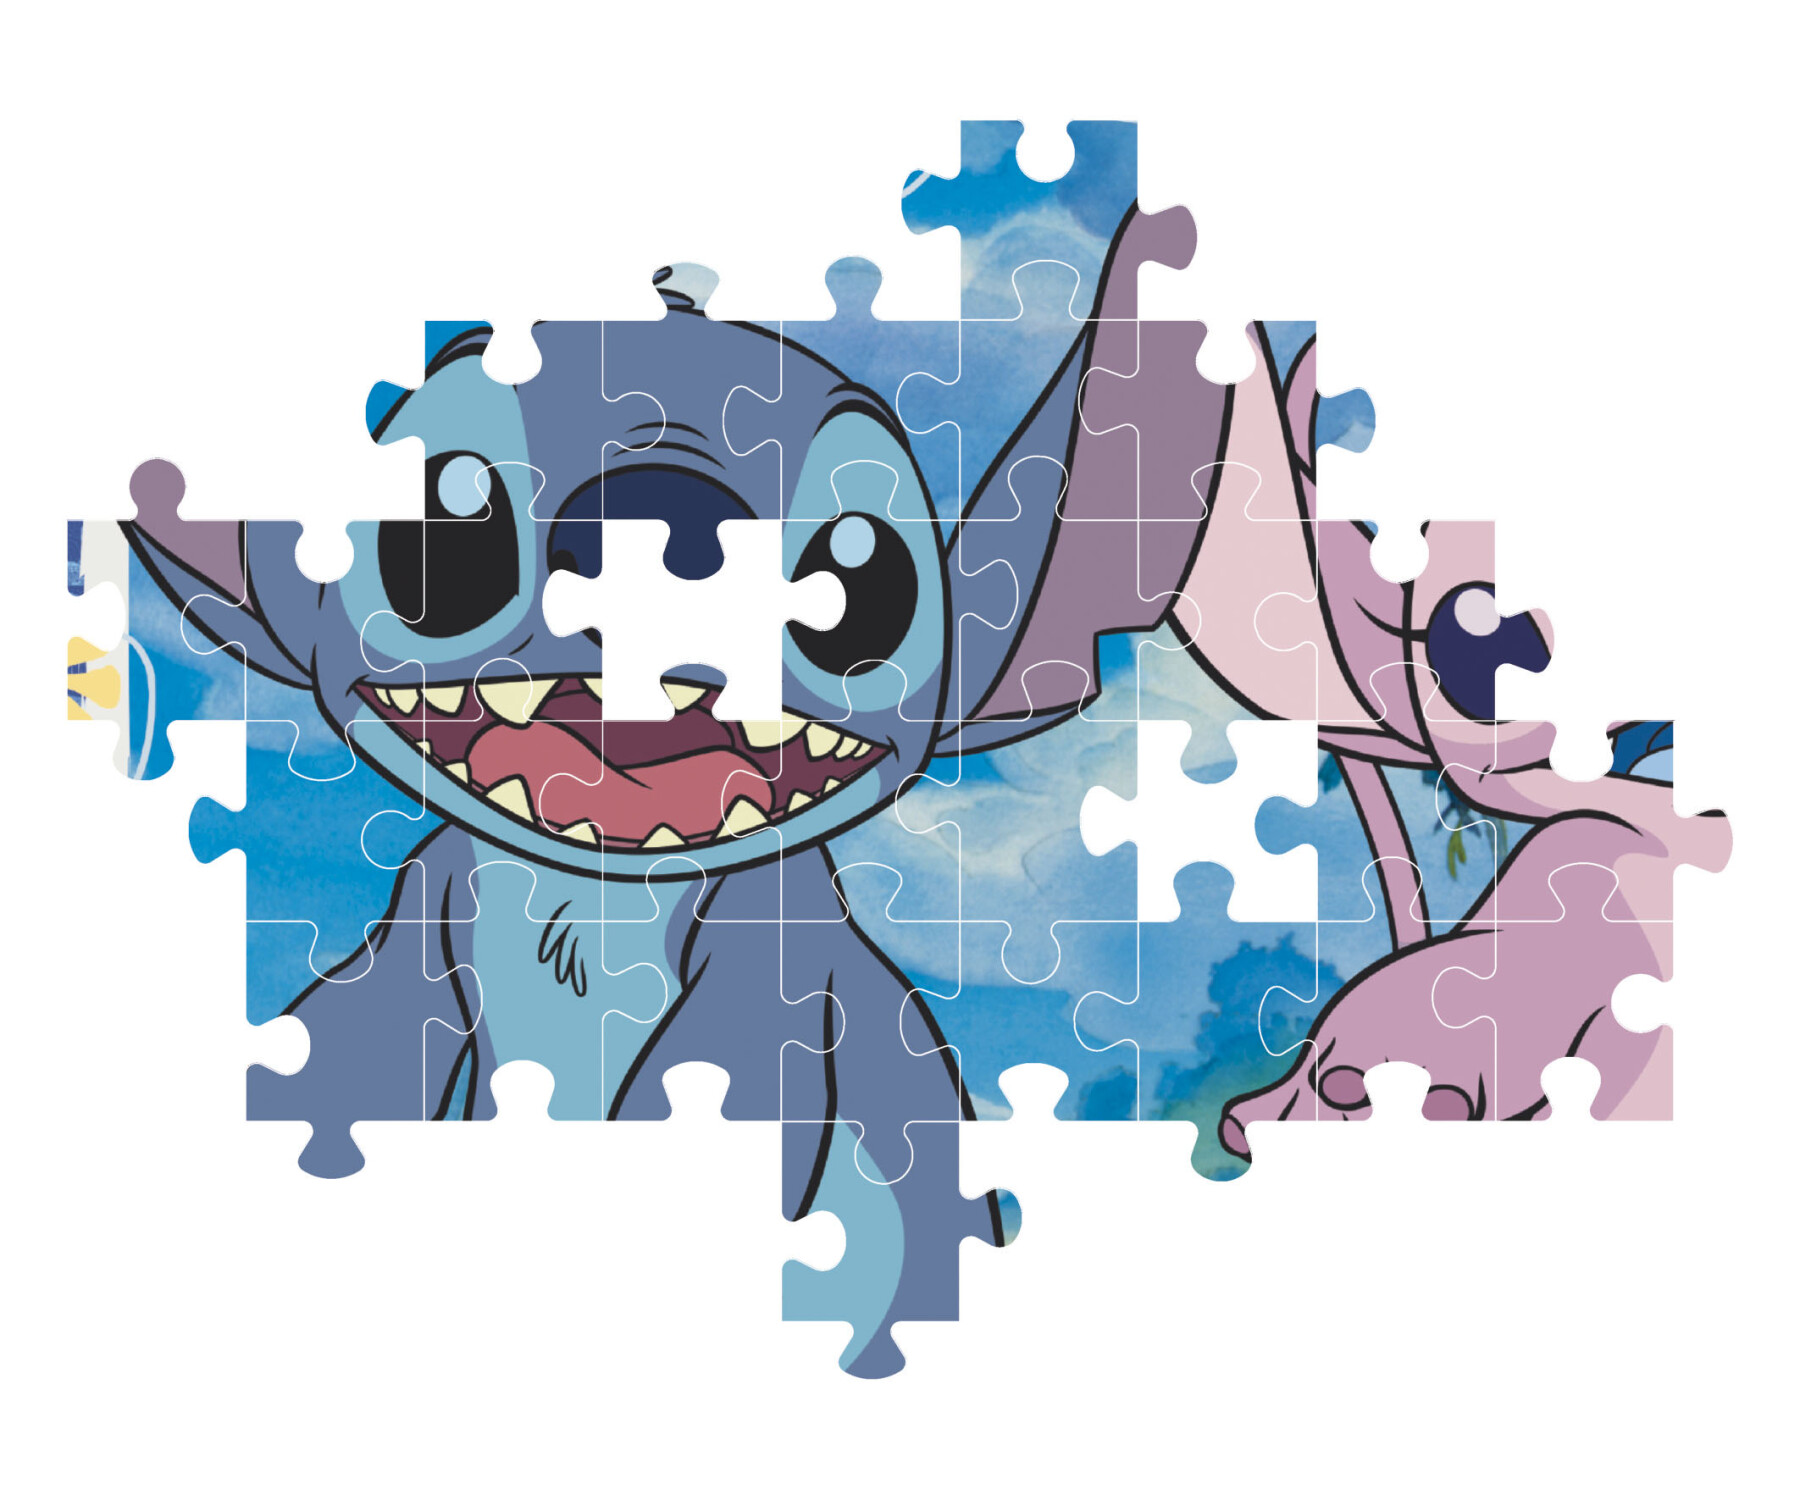 Puzzle 104 super stitch - Disney Stitch